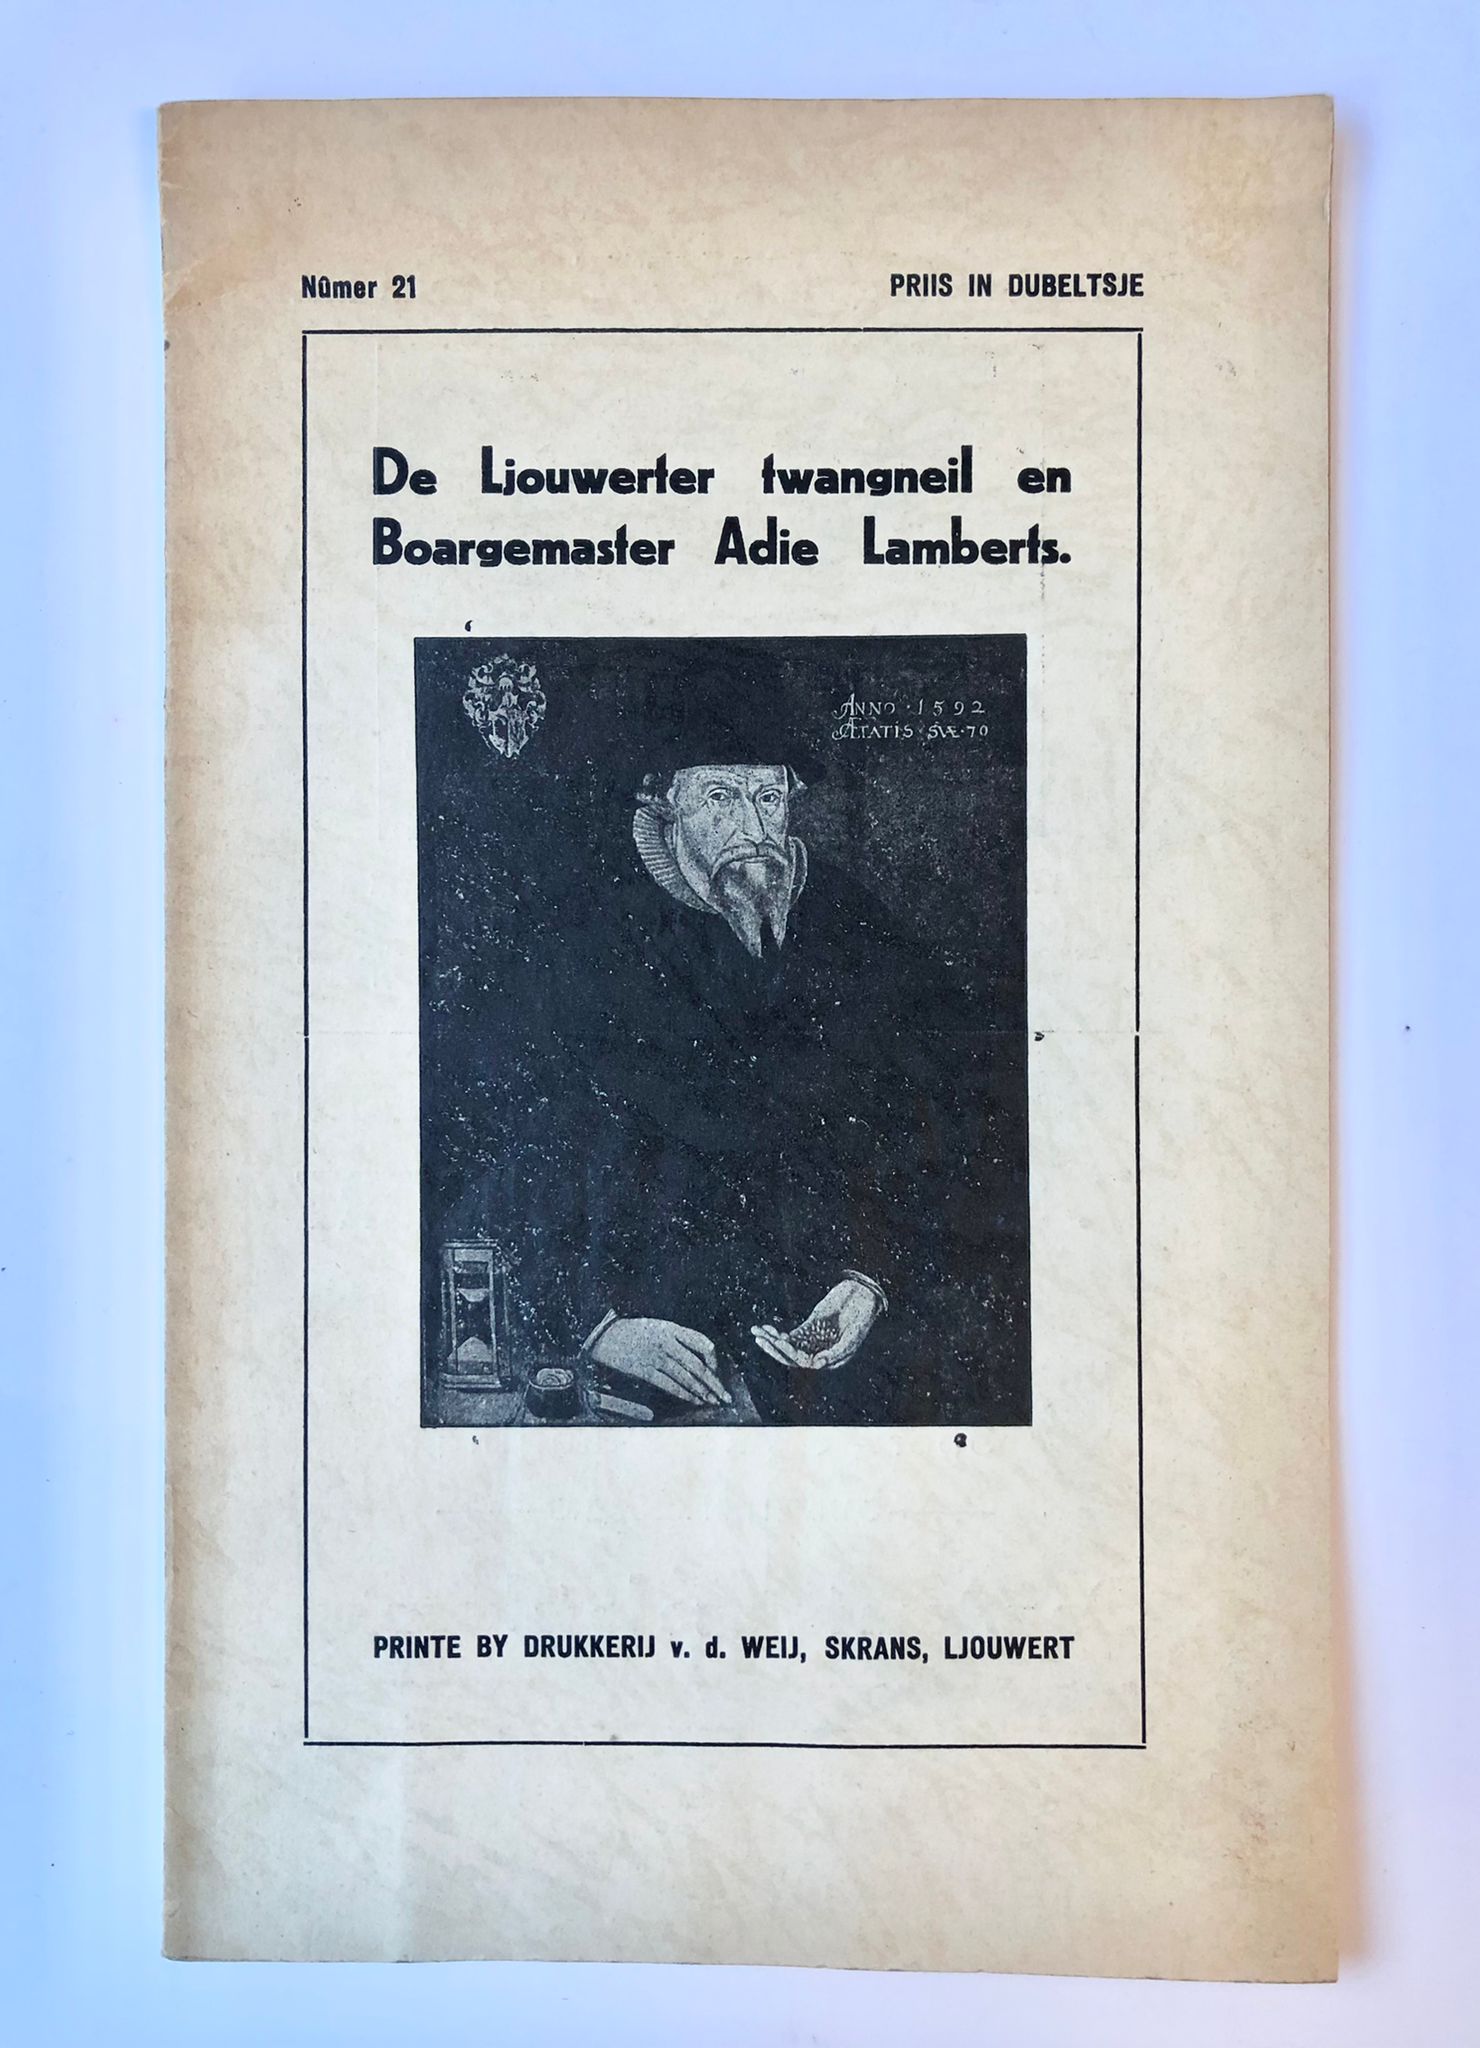 [Ljouwert, Leeuwarden, Frisian language, [1938]] De Ljouwerter twangneil en Boargemaster Adie Lamberts, Nûmer 21, Printe by drukkerij v. d. Weij, Ljouwert [1938], 16 pp.